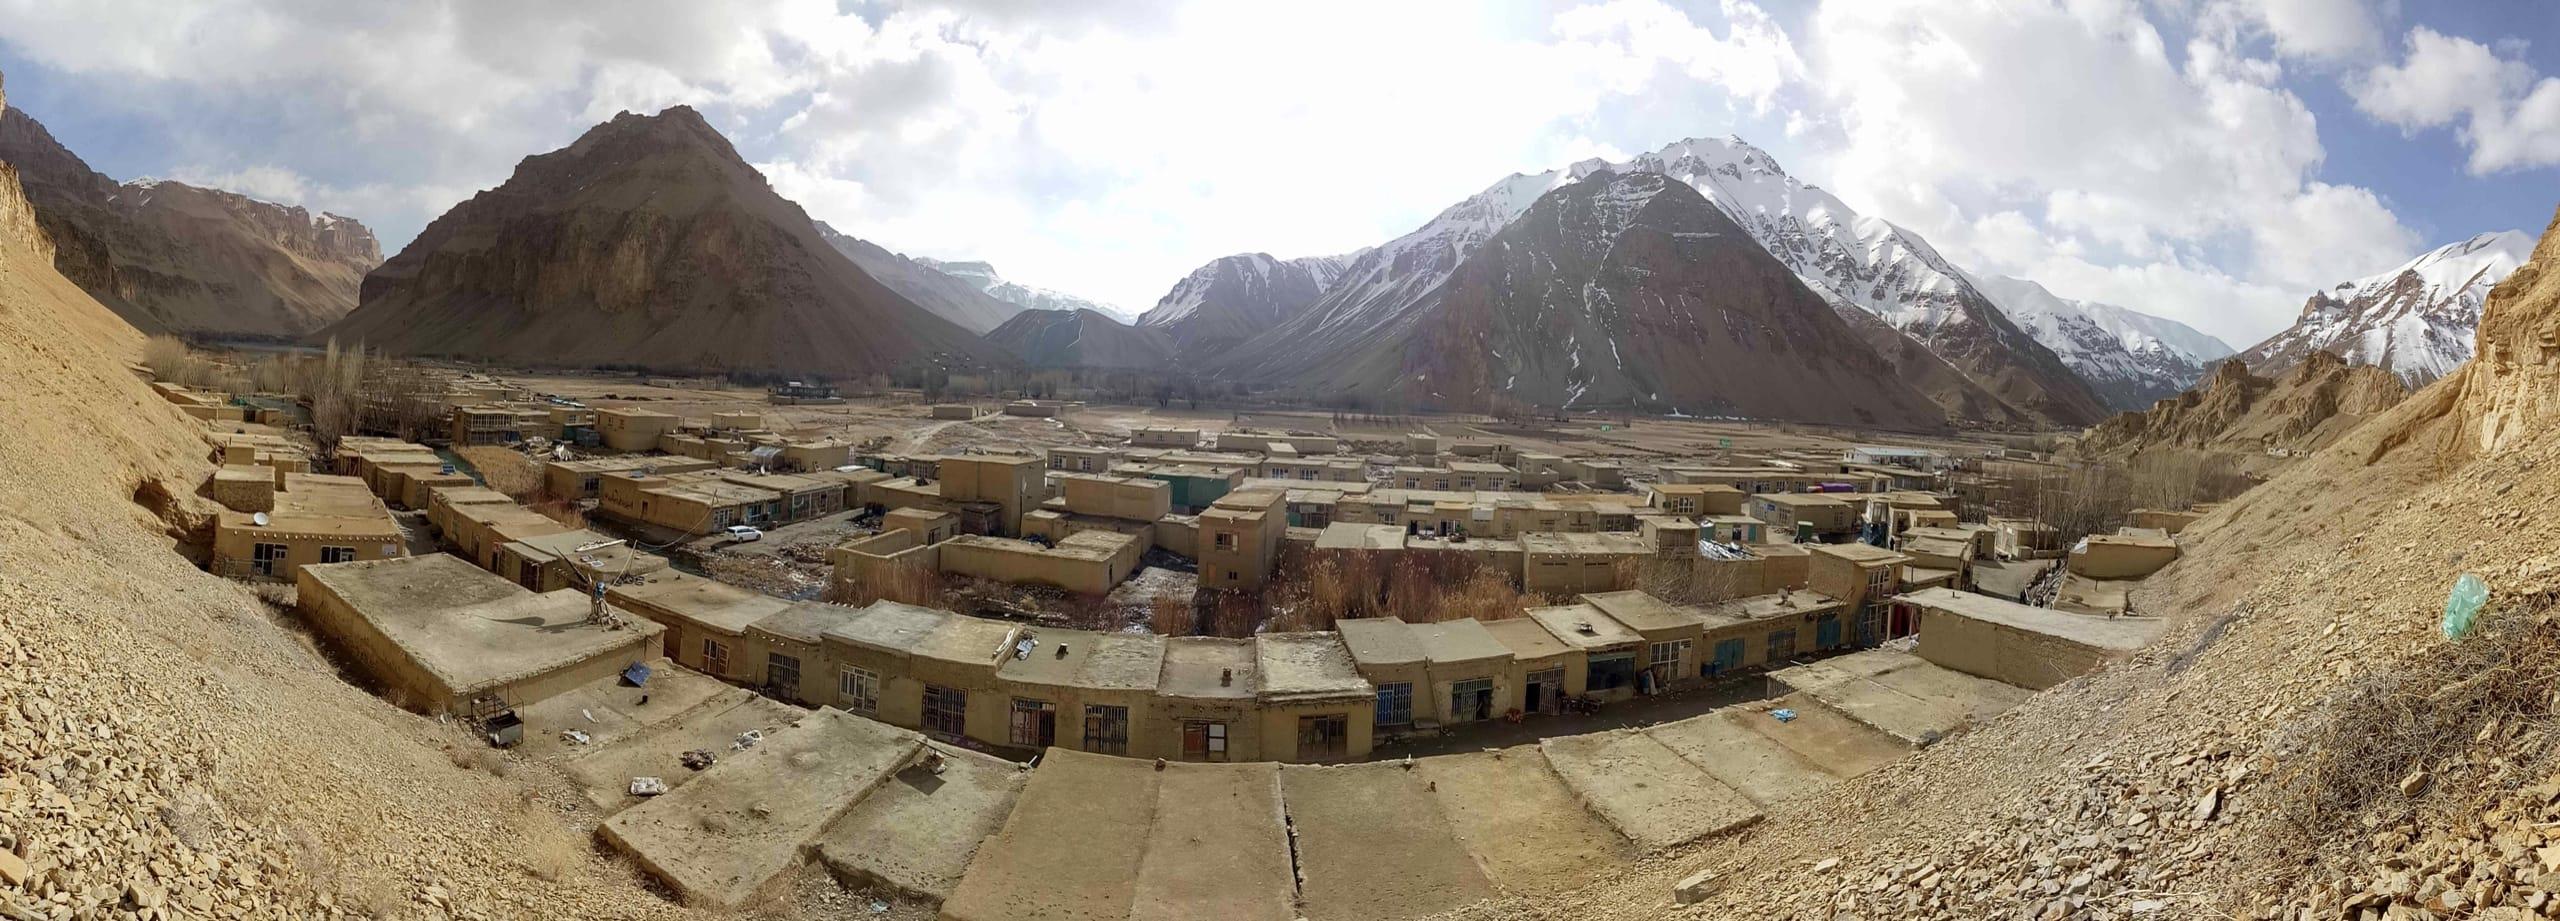 دسترسی به بعضی ساحات در افغانستان بسیار مشکل میباشد. در چنین ساحات روستایی، شبکه های کوچک میتواند برق قابل پرداخت، مطمئن و پاک را فراهم کند.